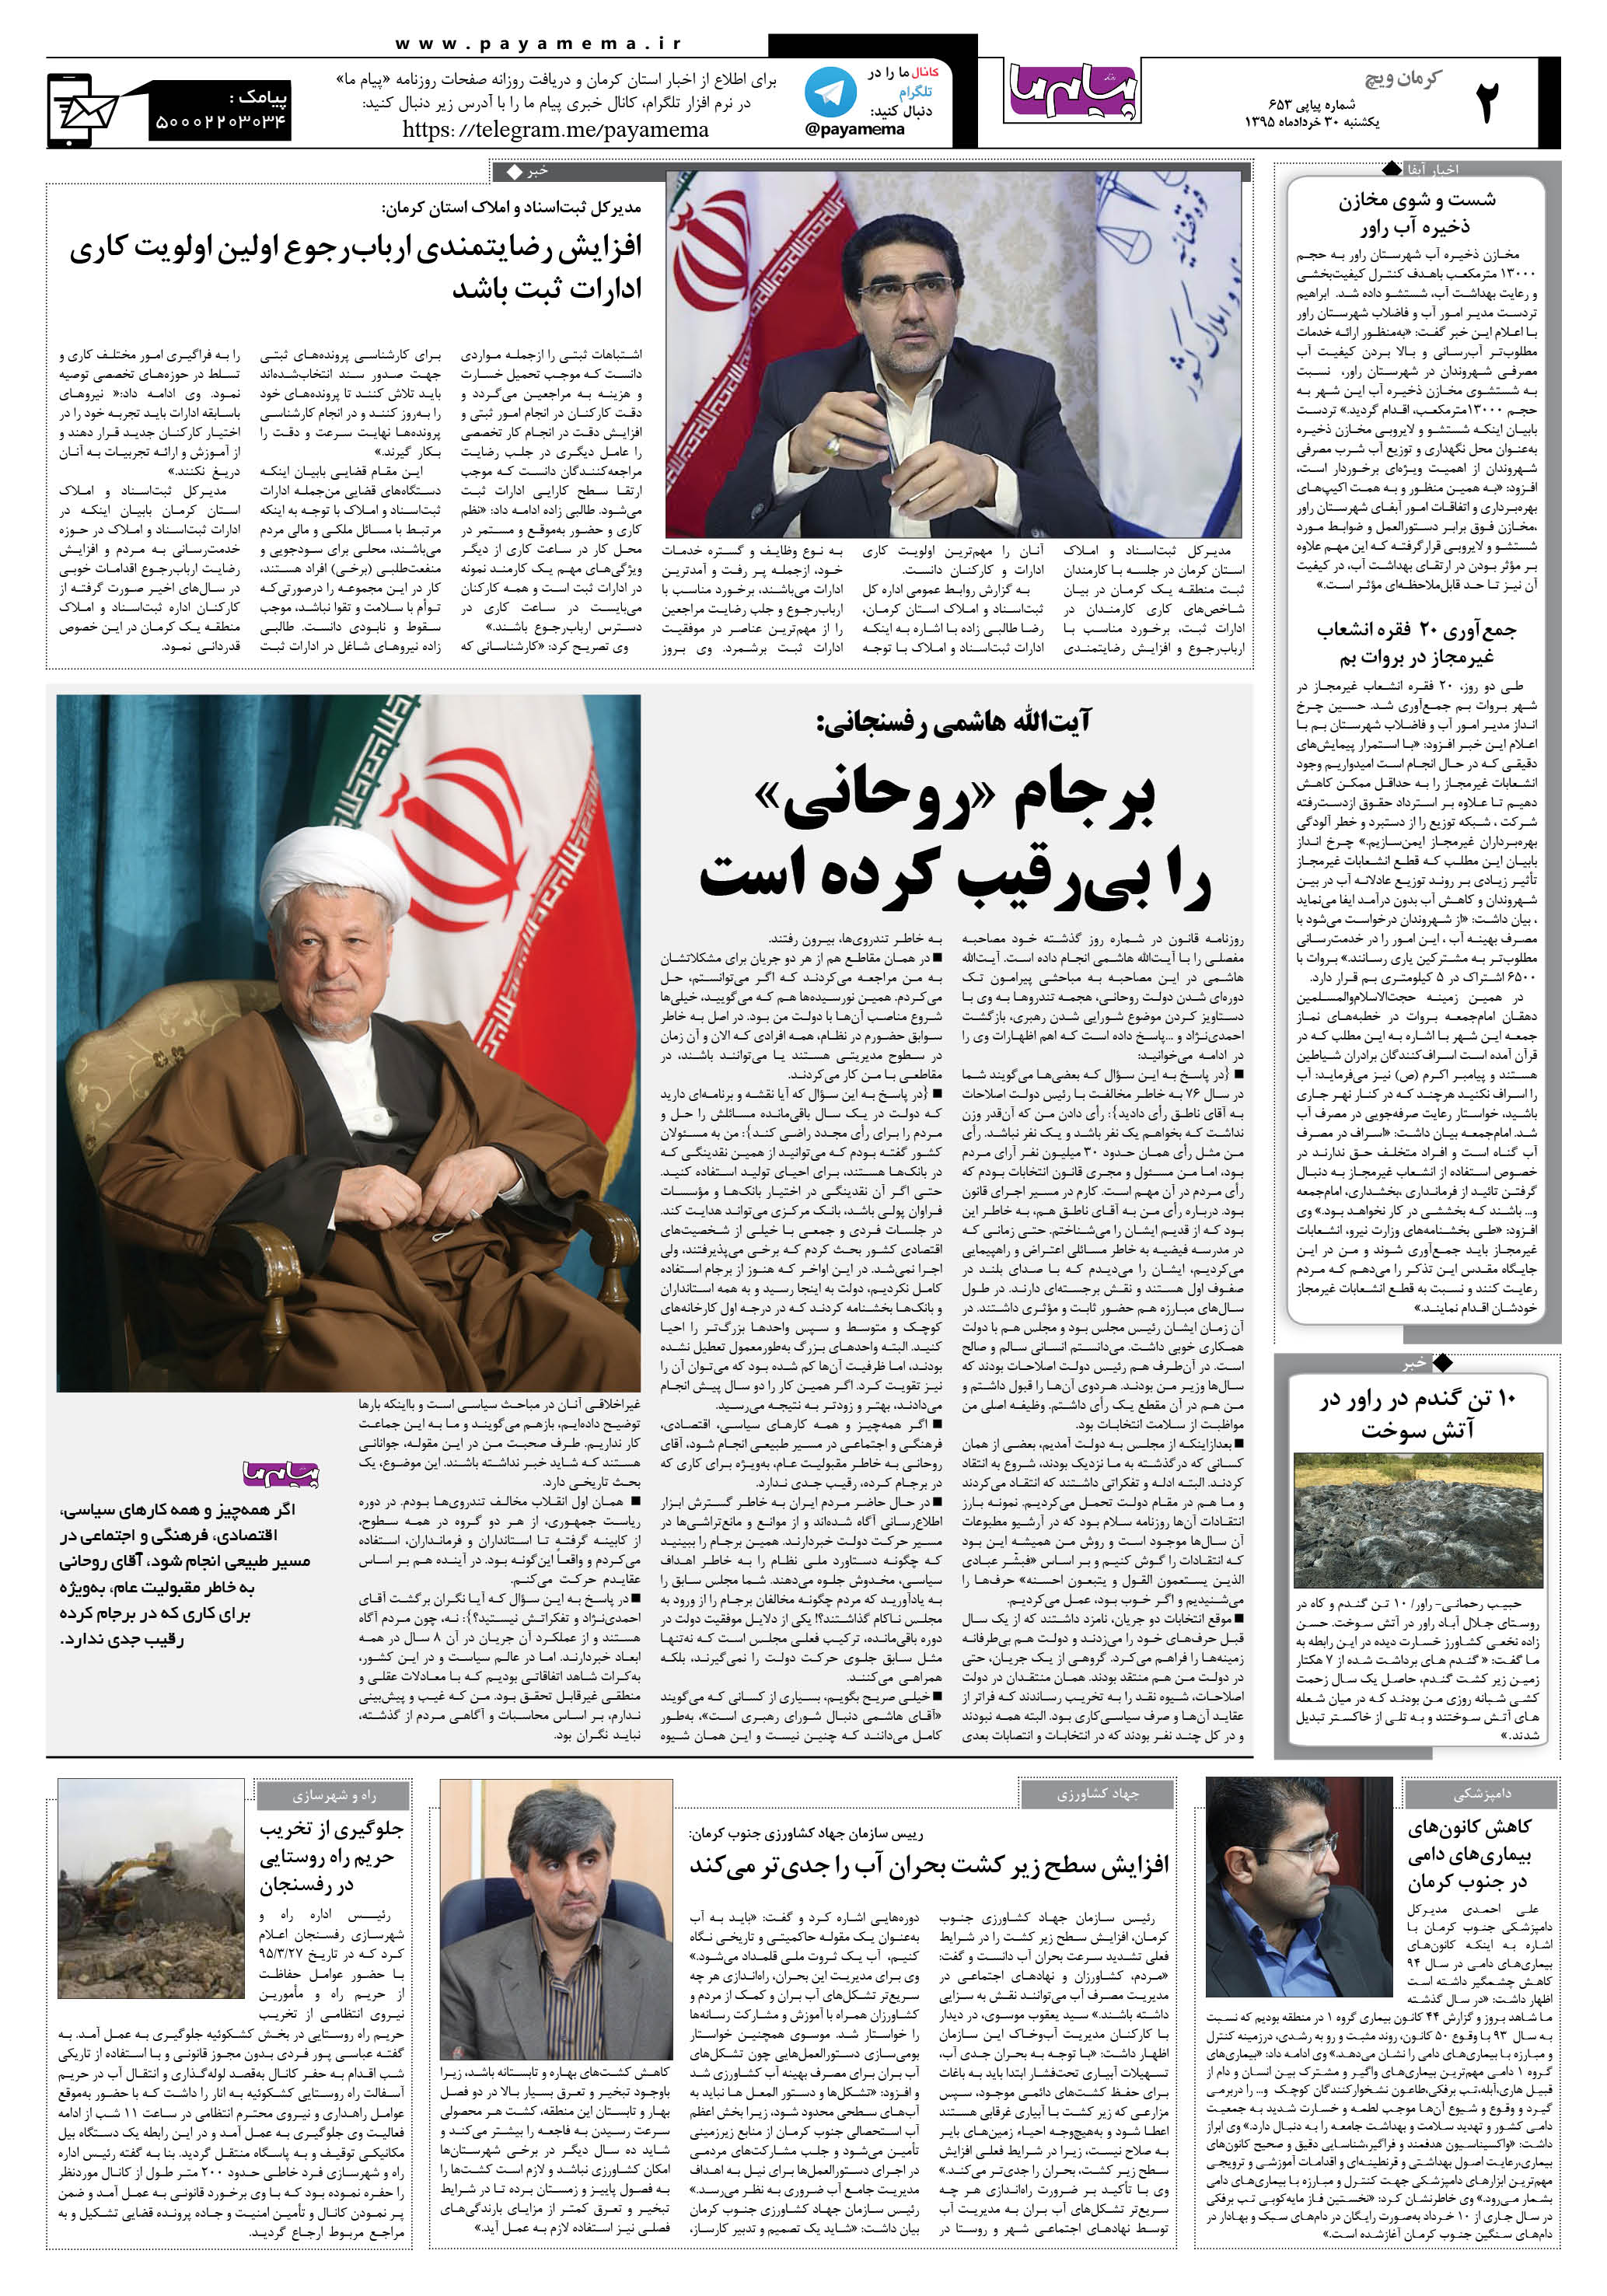 صفحه کرمان ویج شماره 653 روزنامه پیام ما